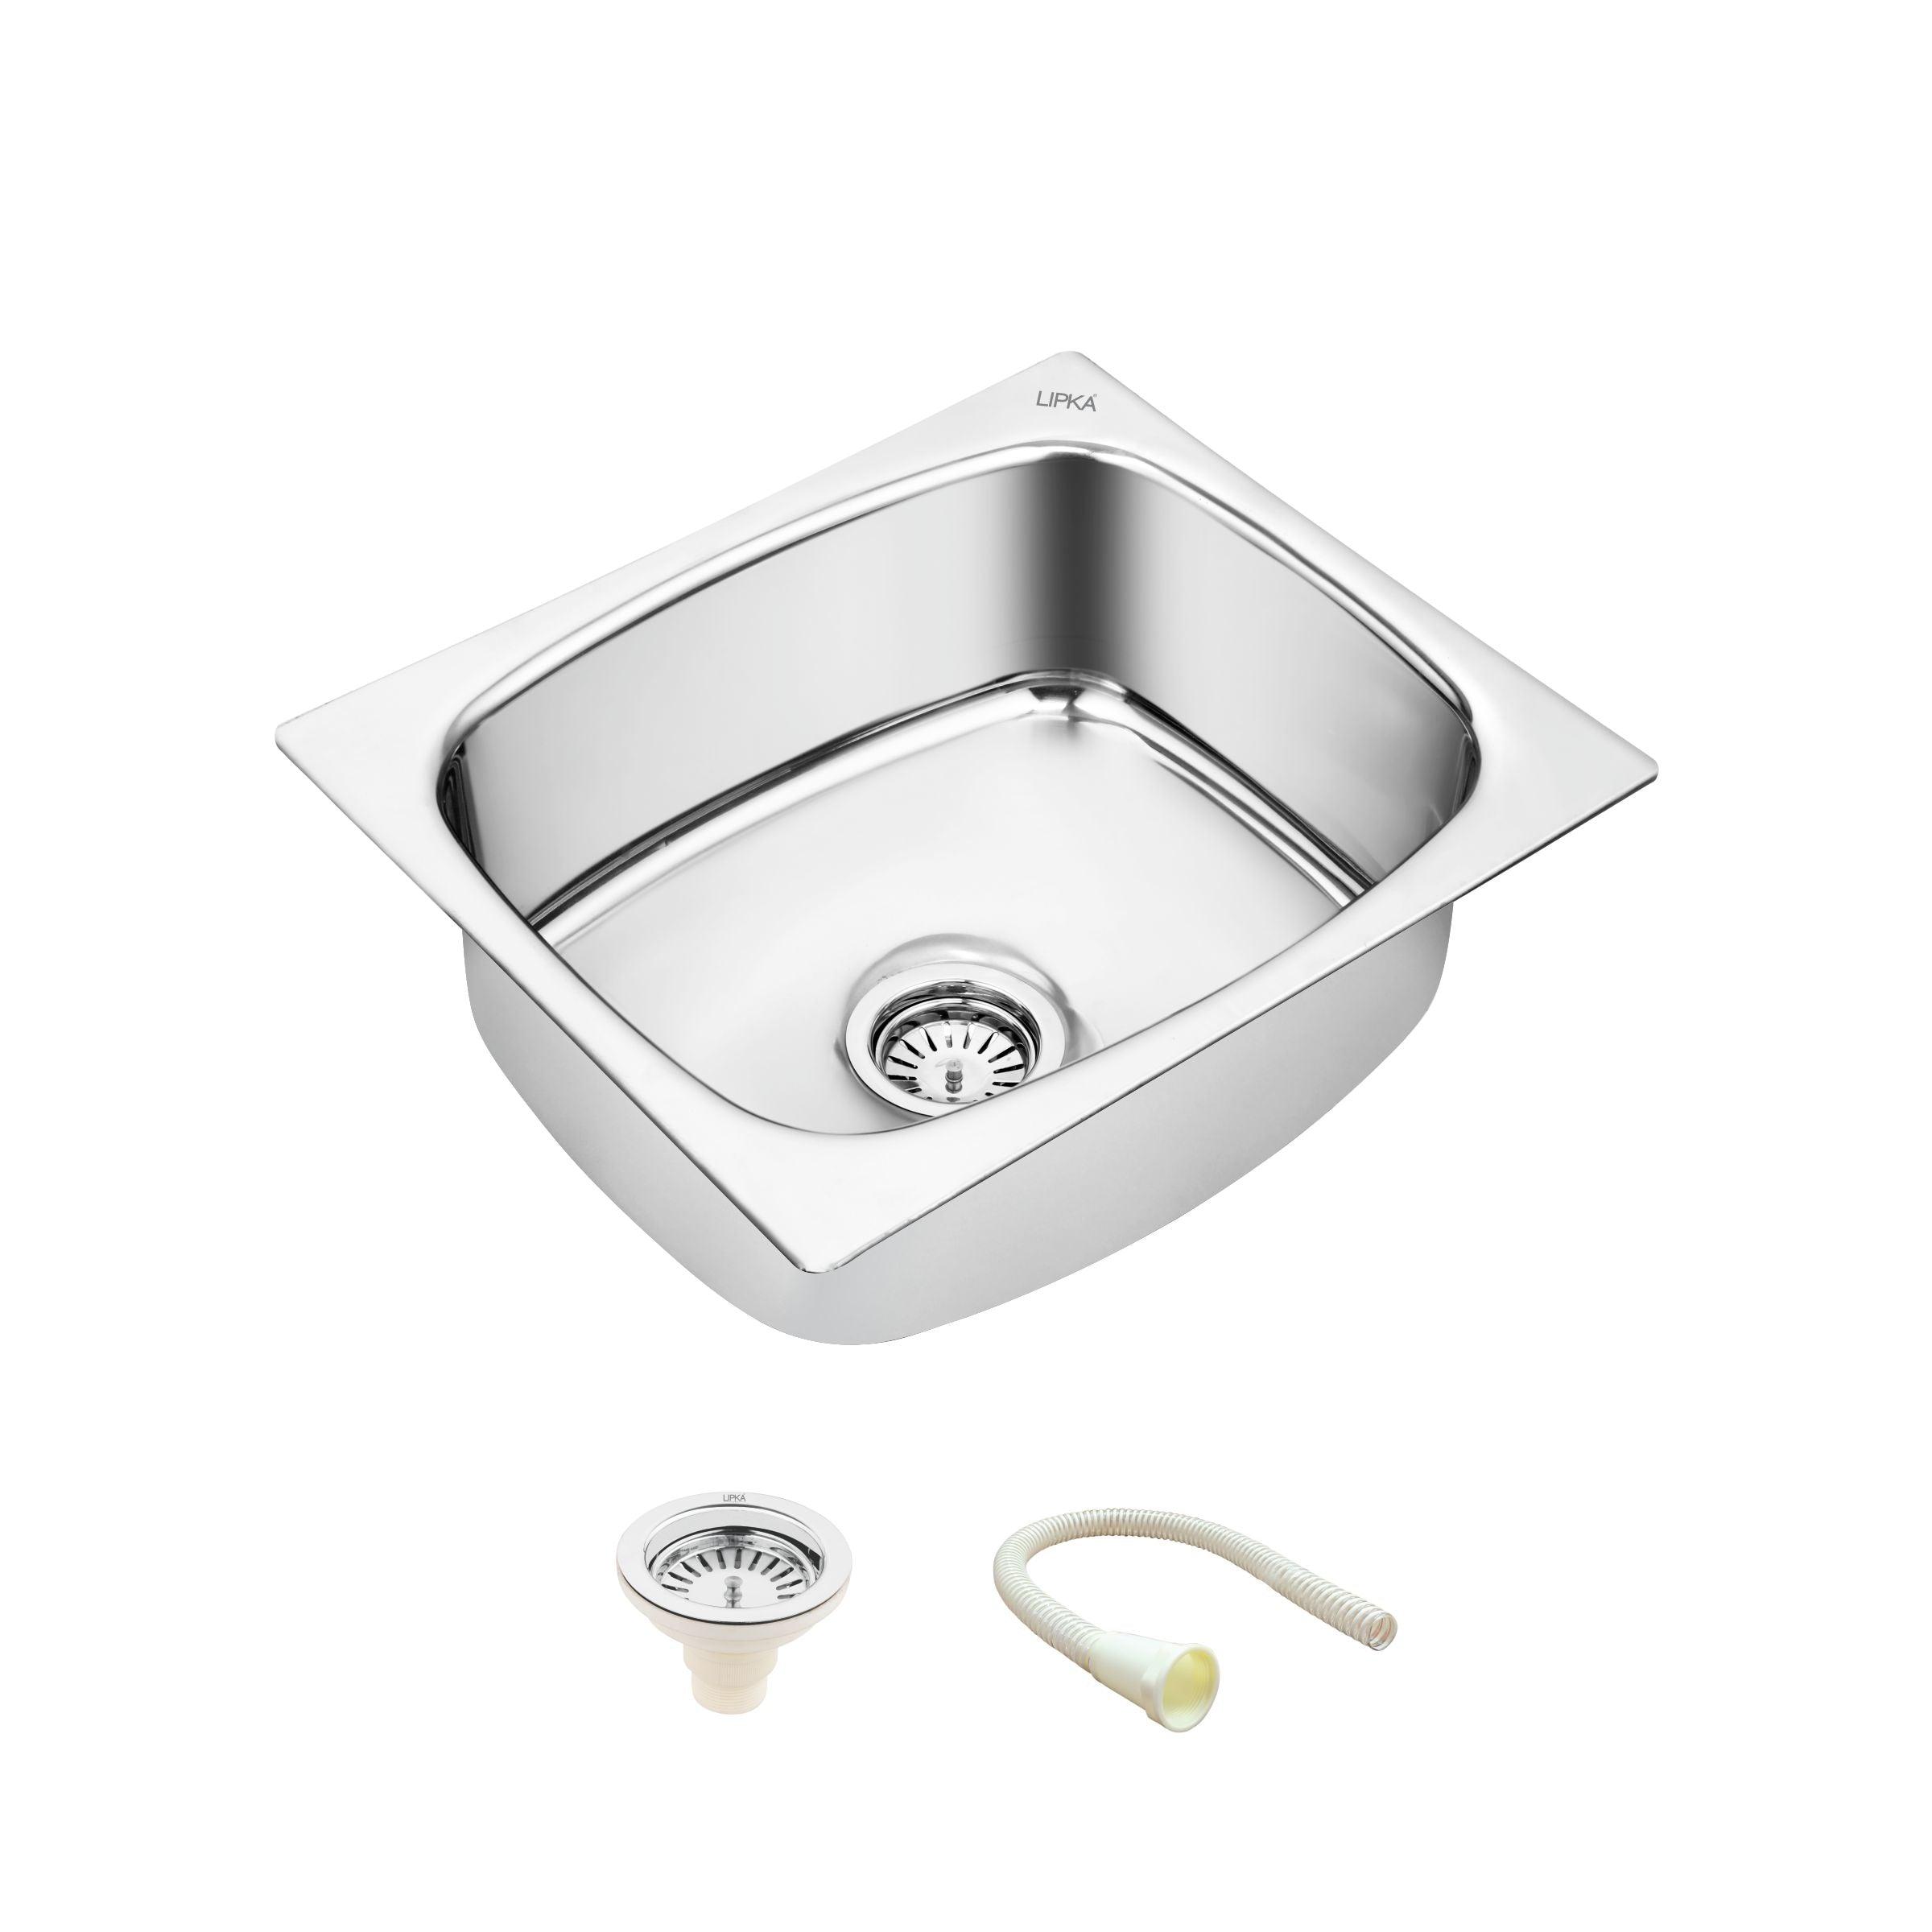 Round Single Bowl 304-Grade Kitchen Sink (21 x 18 x 8 Inches) - LIPKA - Lipka Home